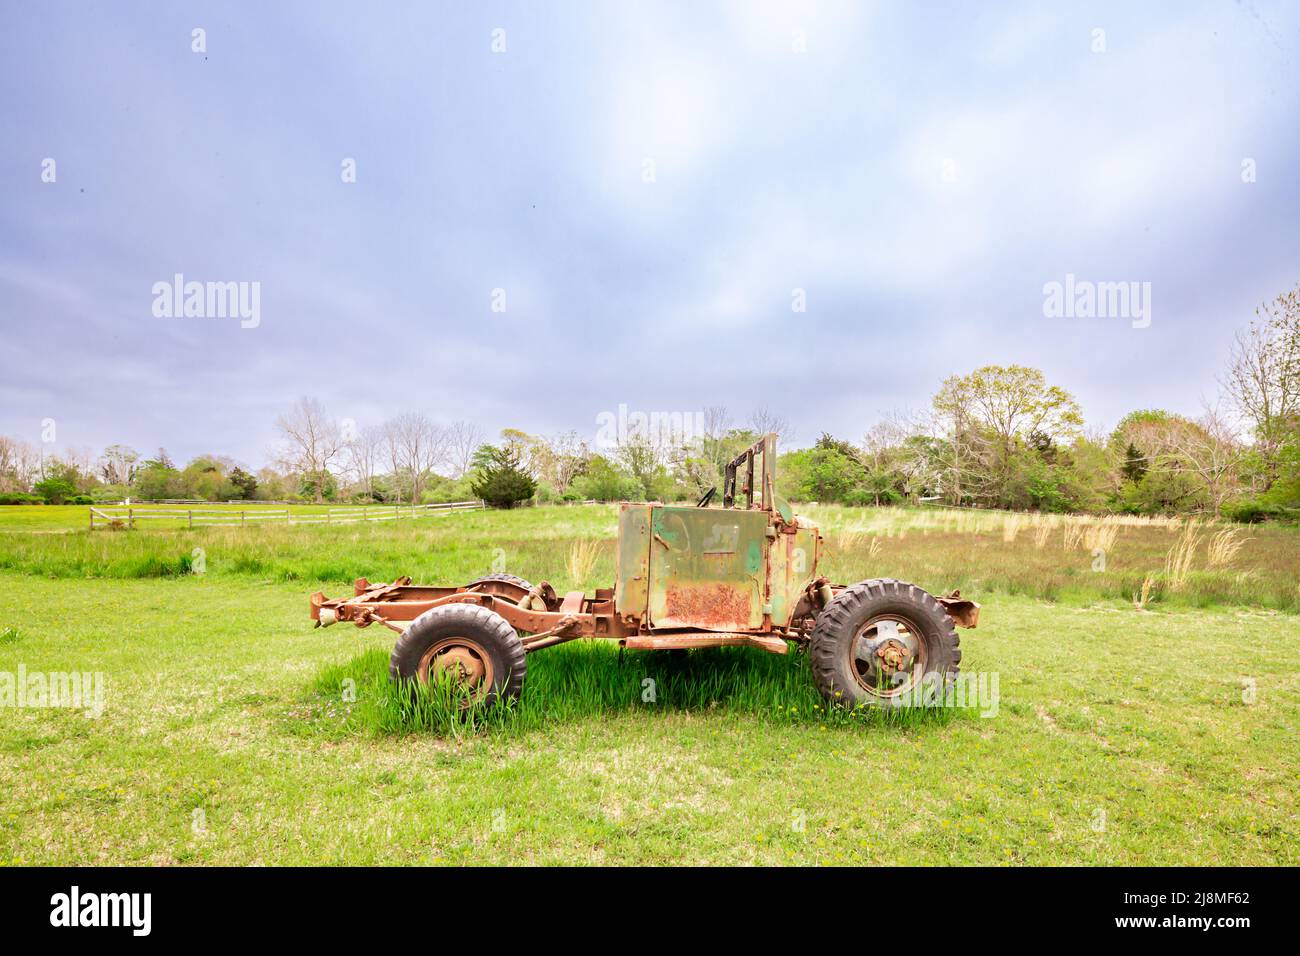 Un vieux véhicule assis dans un champ vert Banque D'Images